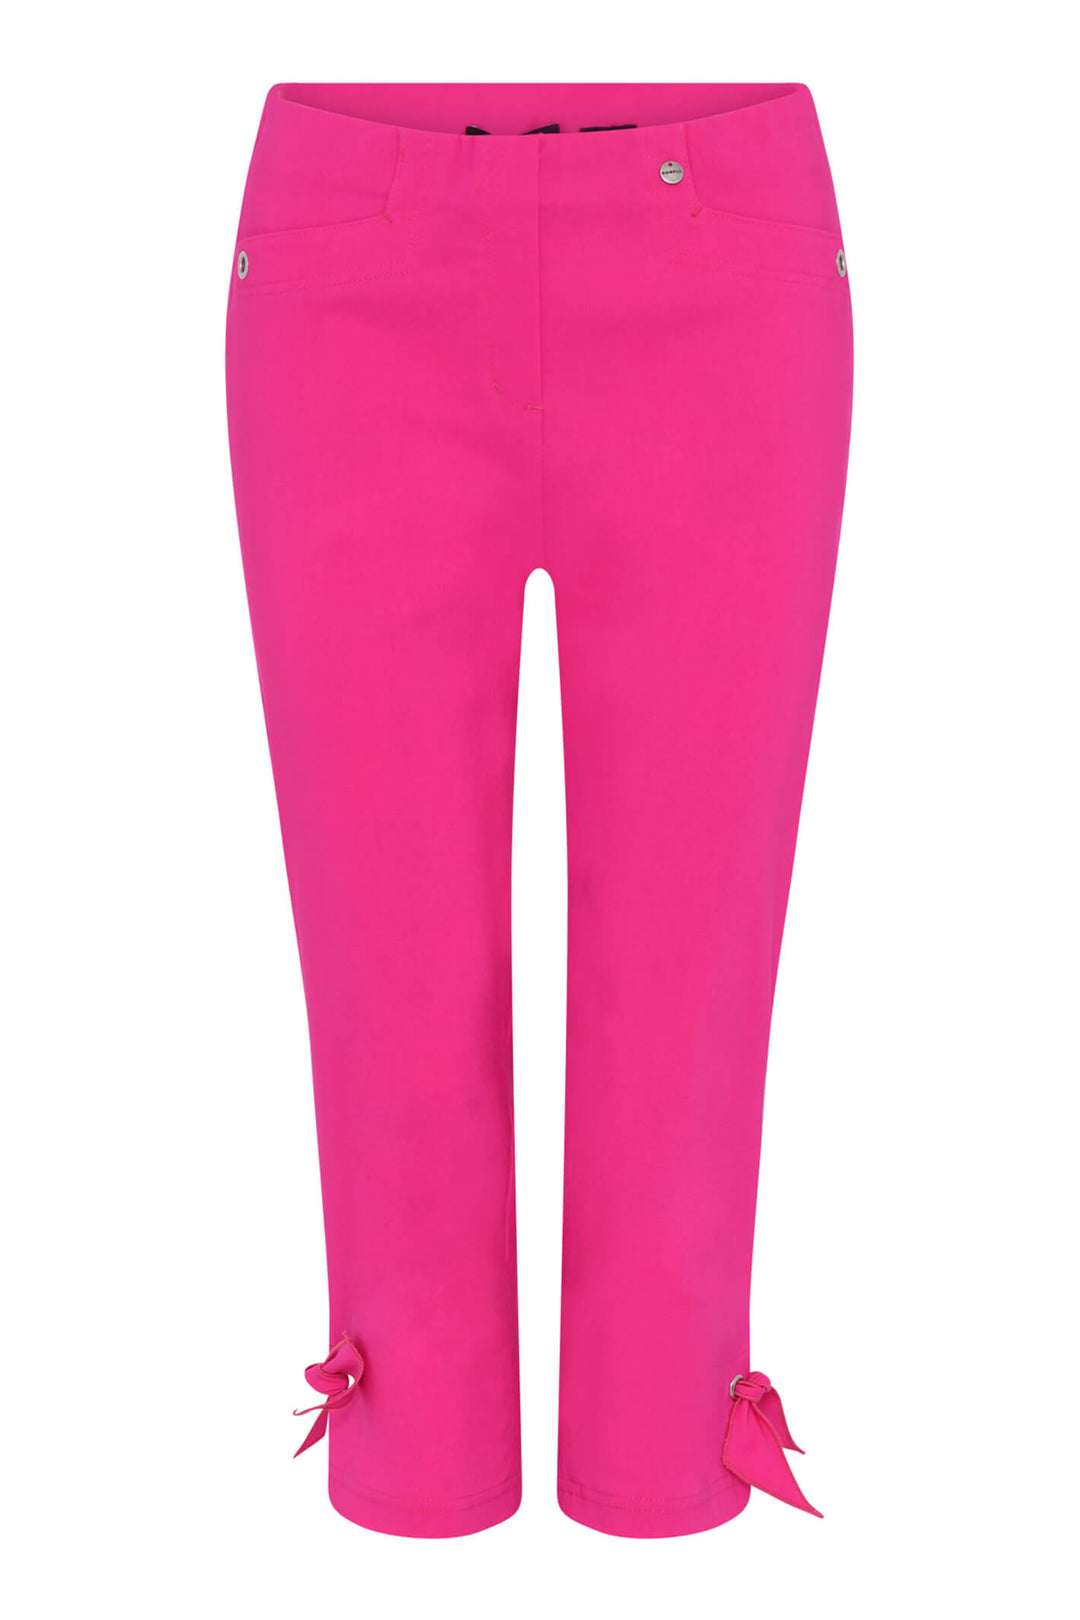 Robell Rose 07 Cabaret Pink 433 Crop Trouser 55cm 53433-5499 - Olivia Grace Fashion